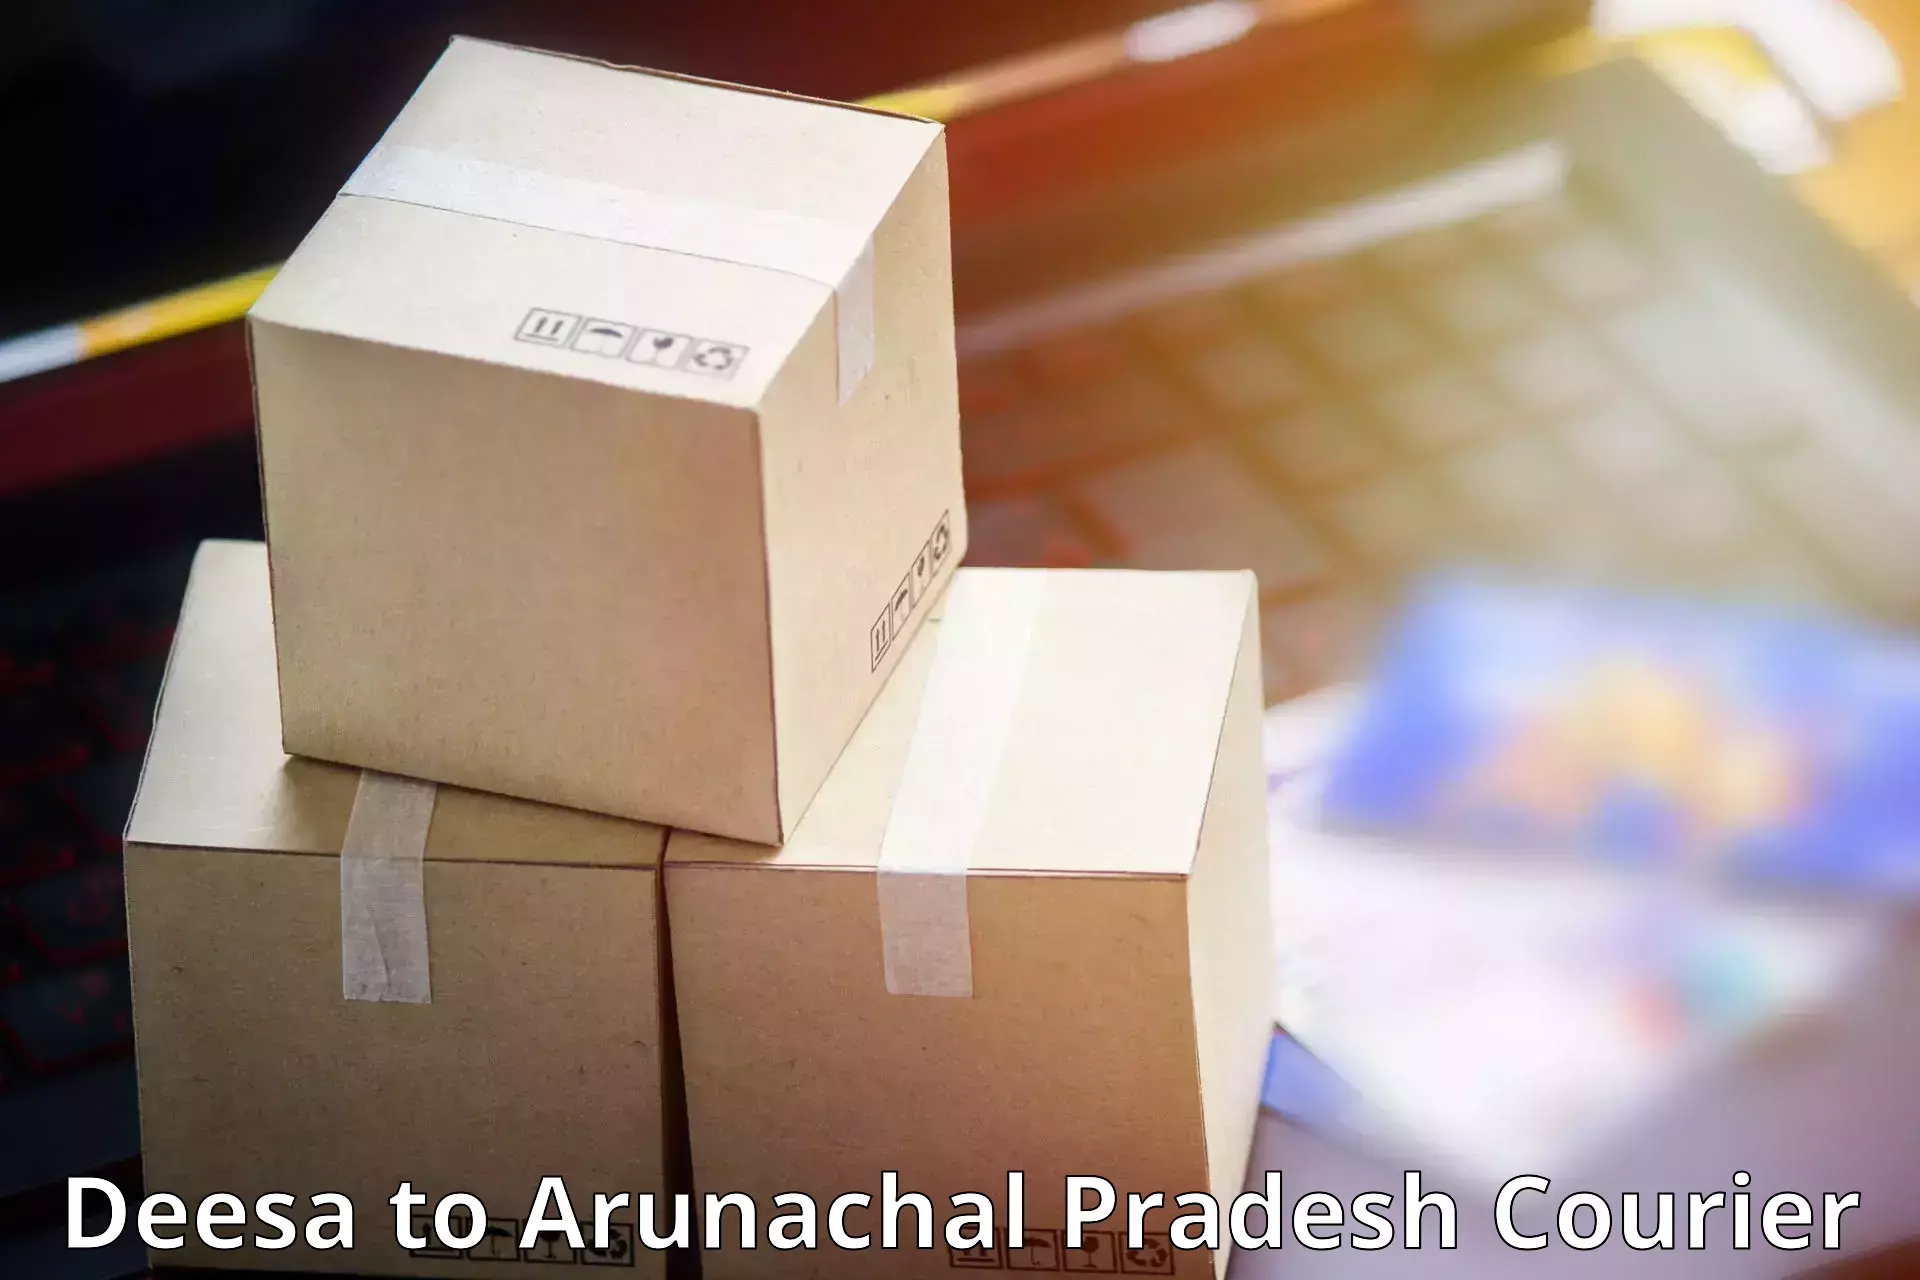 Special handling courier Deesa to Arunachal Pradesh